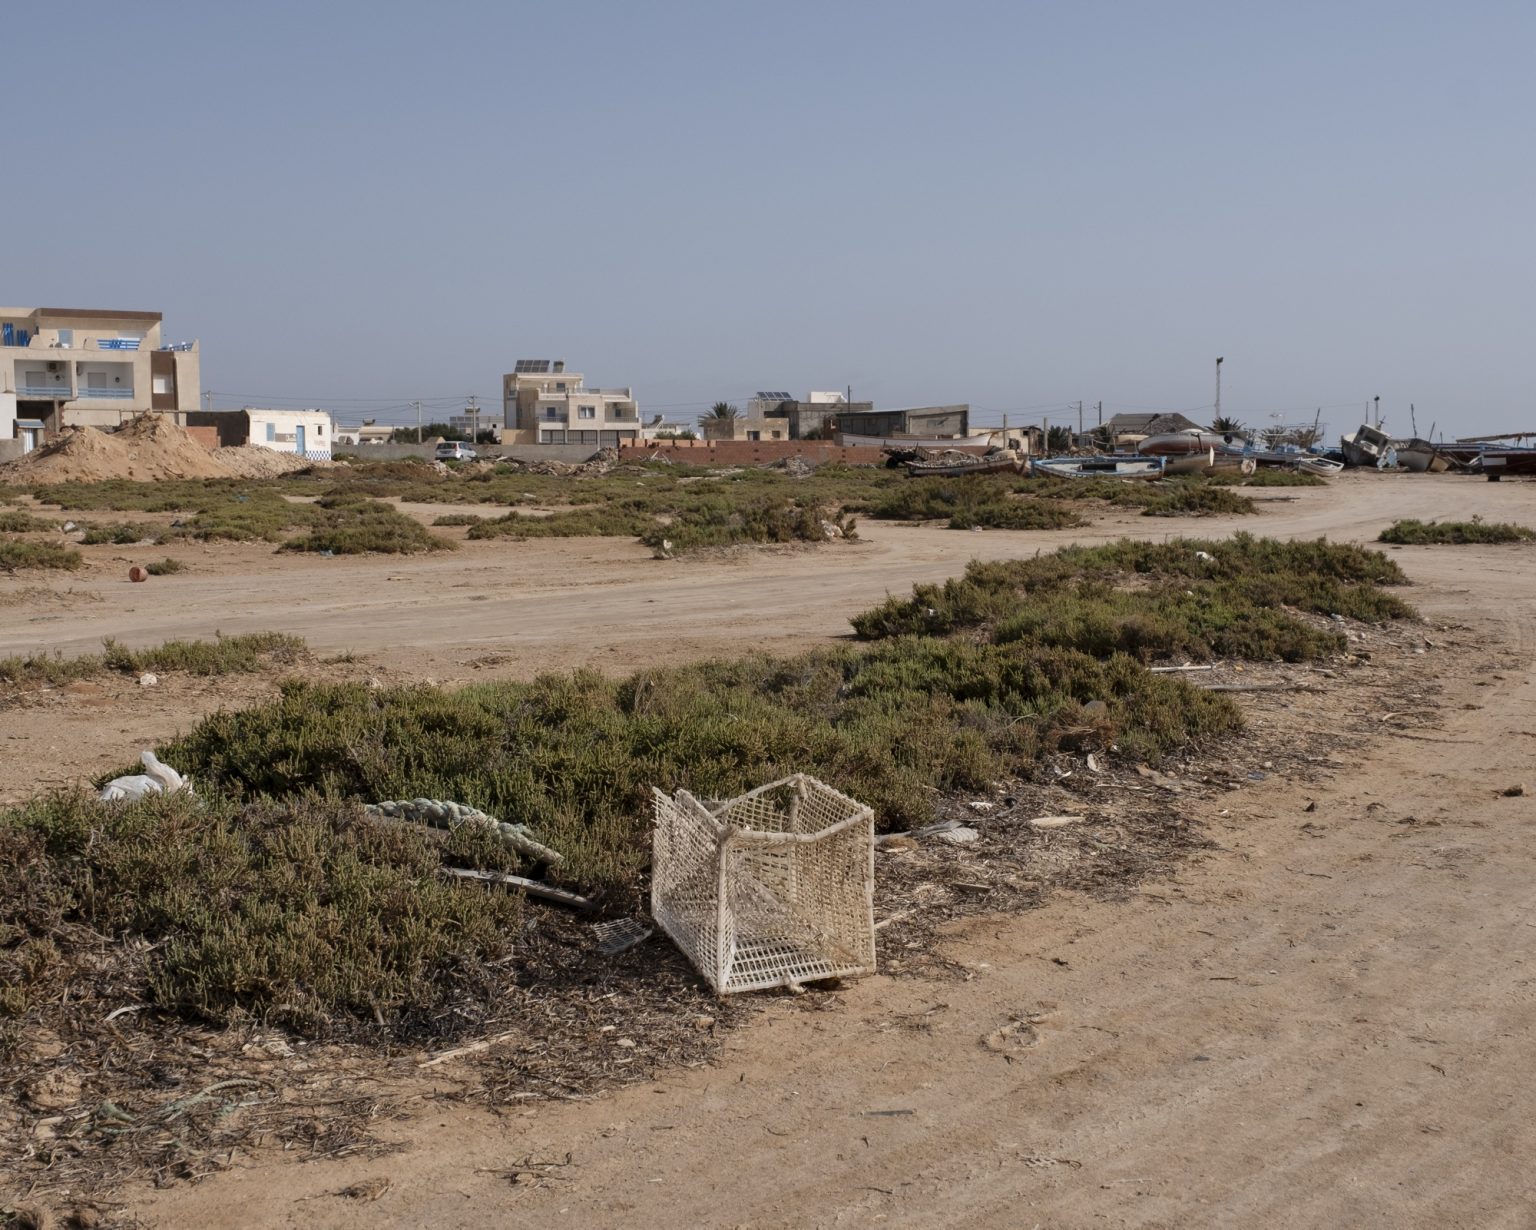 Kerkennah Islands (Tunisia), June 2022 - Plastic waste is a major problem for the island's ecosystem.
><
Isole Kerkennah (Tunisia), giugno 2022 - I rifiuti in plastica rappresentano un grande problema per lecosistema dellisola.